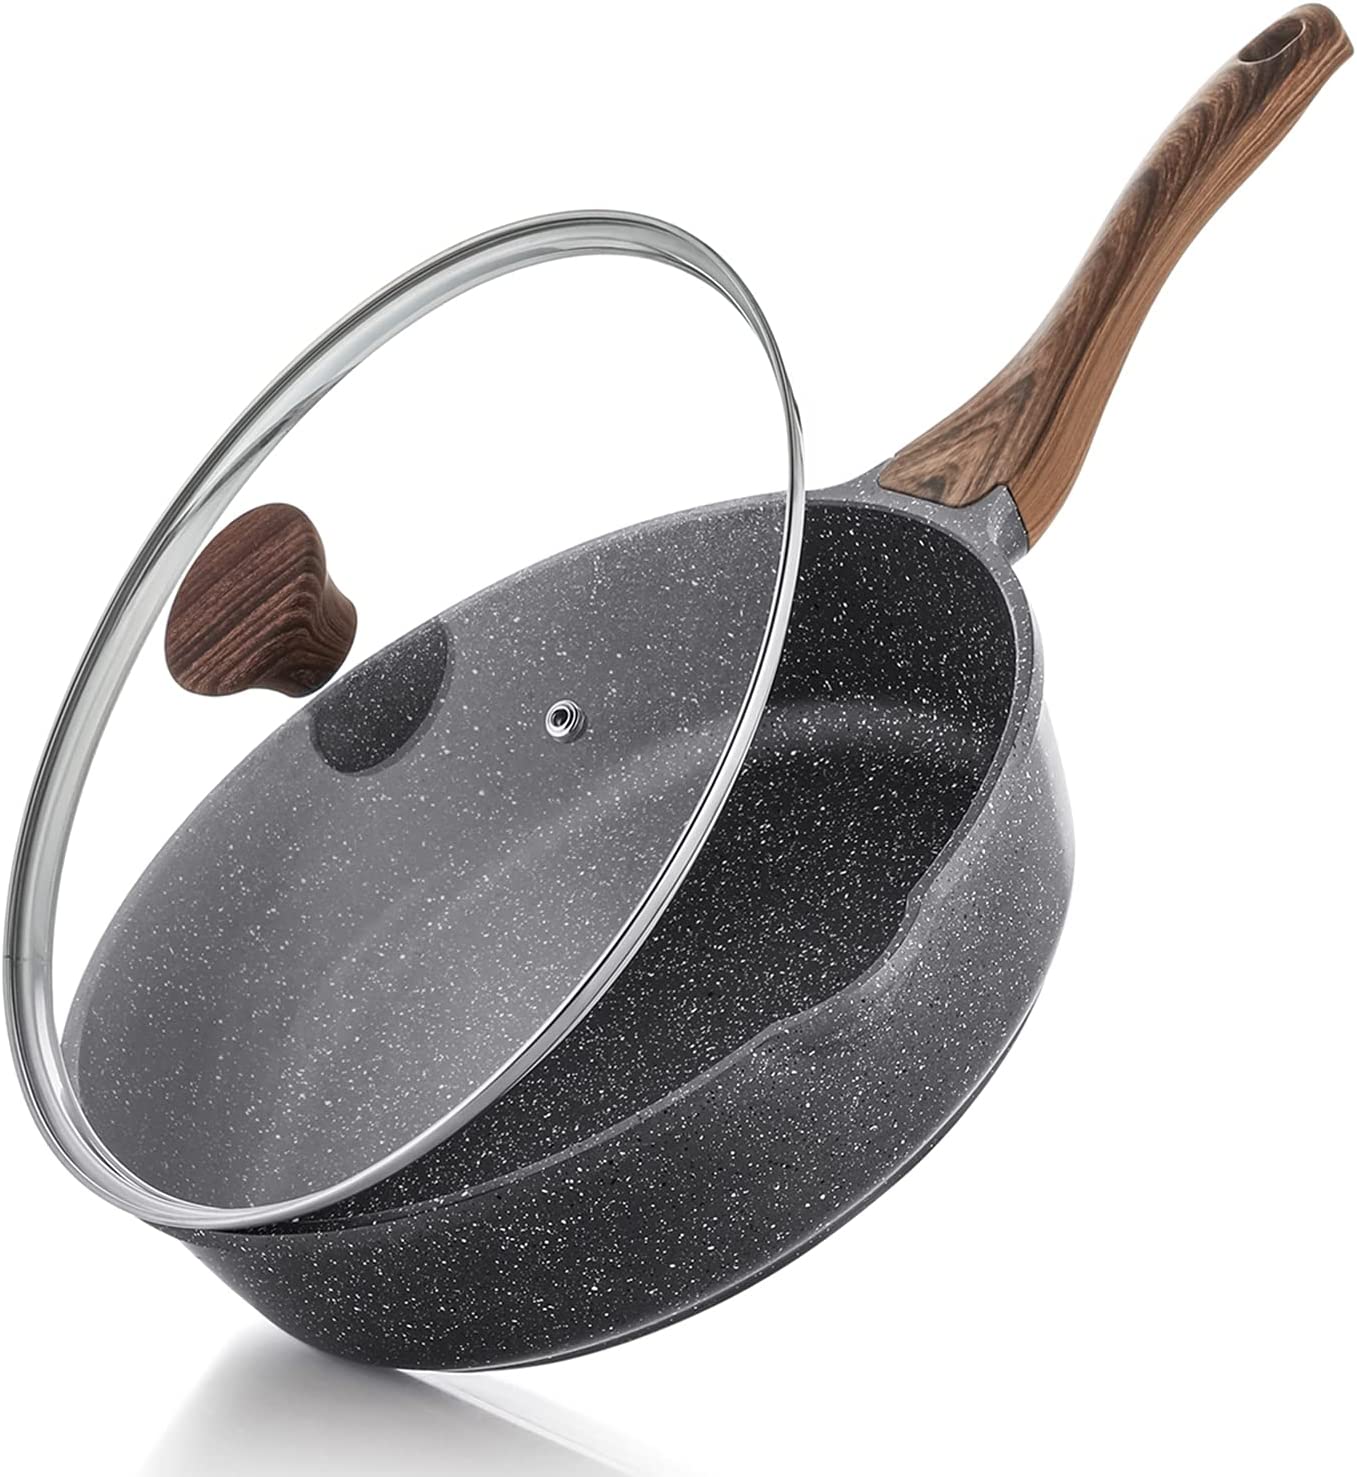 JEETEE Nonstick Frying Pan, Stone Coating Cookware, Nonstick